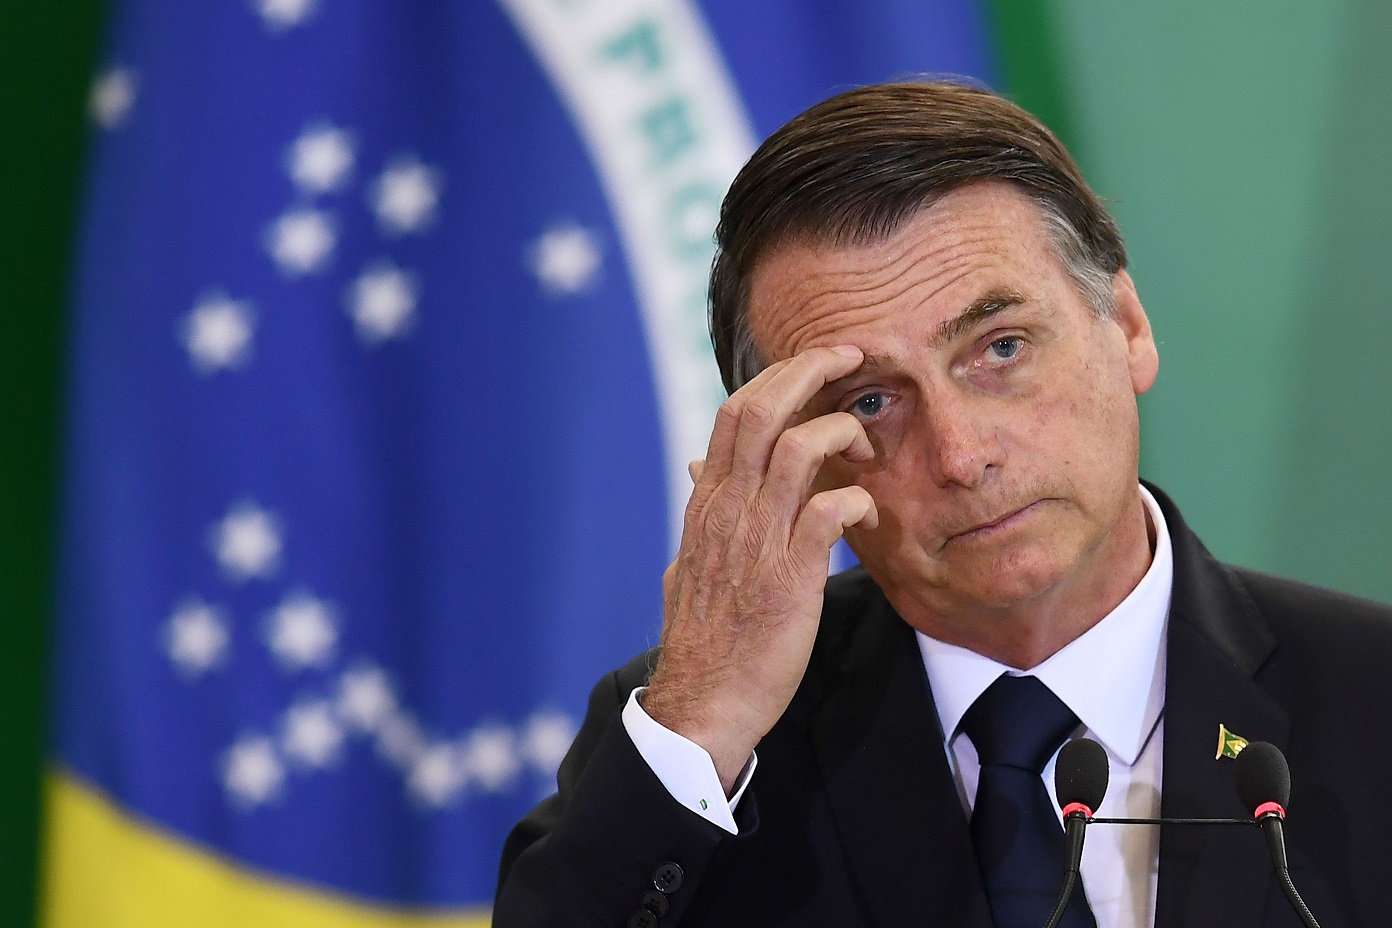 Ministério da Justiça contradiz Bolsonaro em caso de candidaturas laranjas do PSL